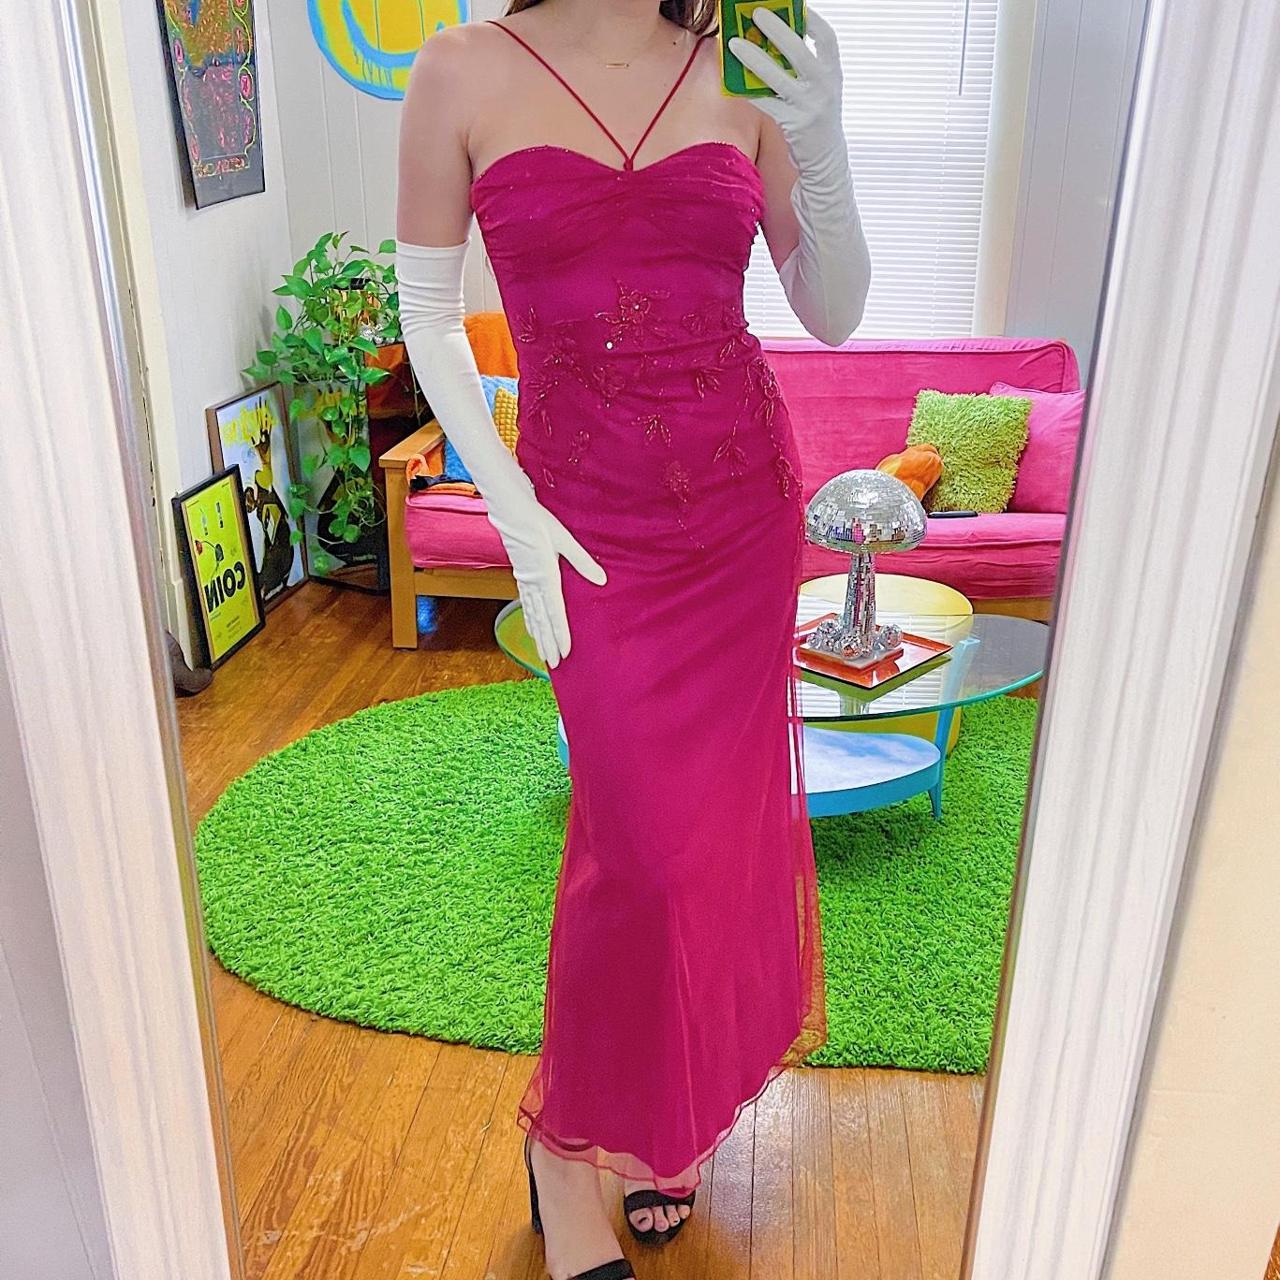 Gorman Women's Pink Dress